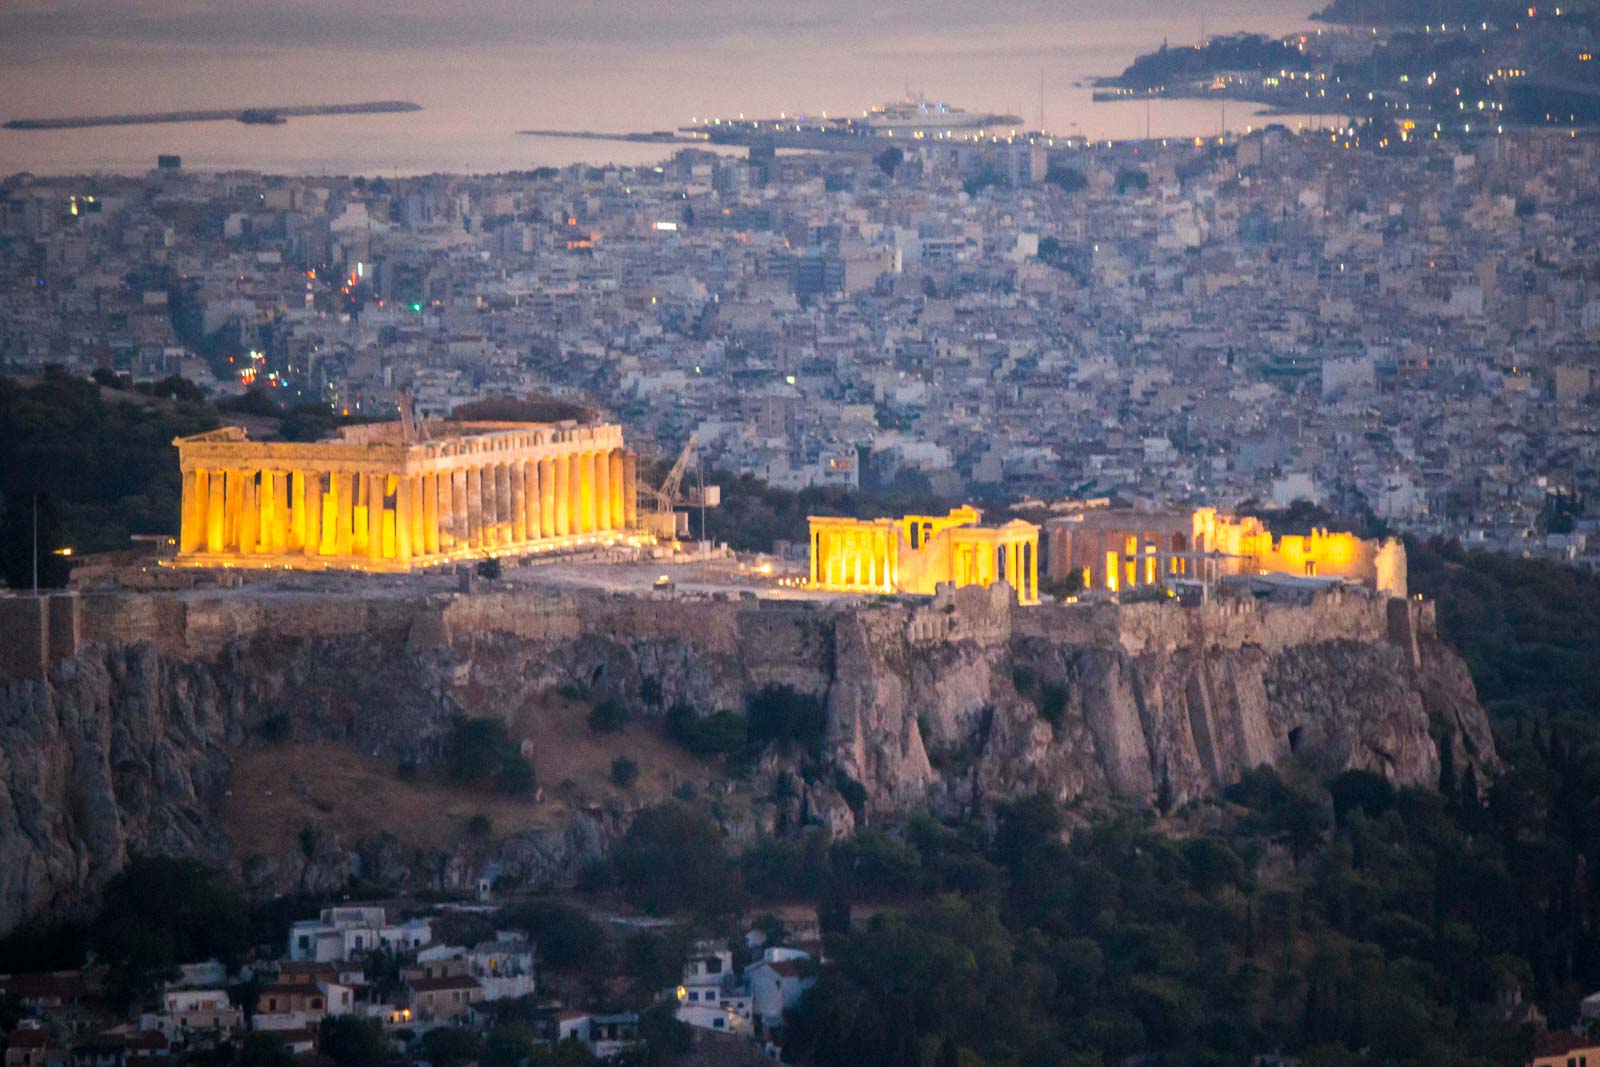 The Acropolis and Parthenon in Athens Greece: Acropolis Wow!